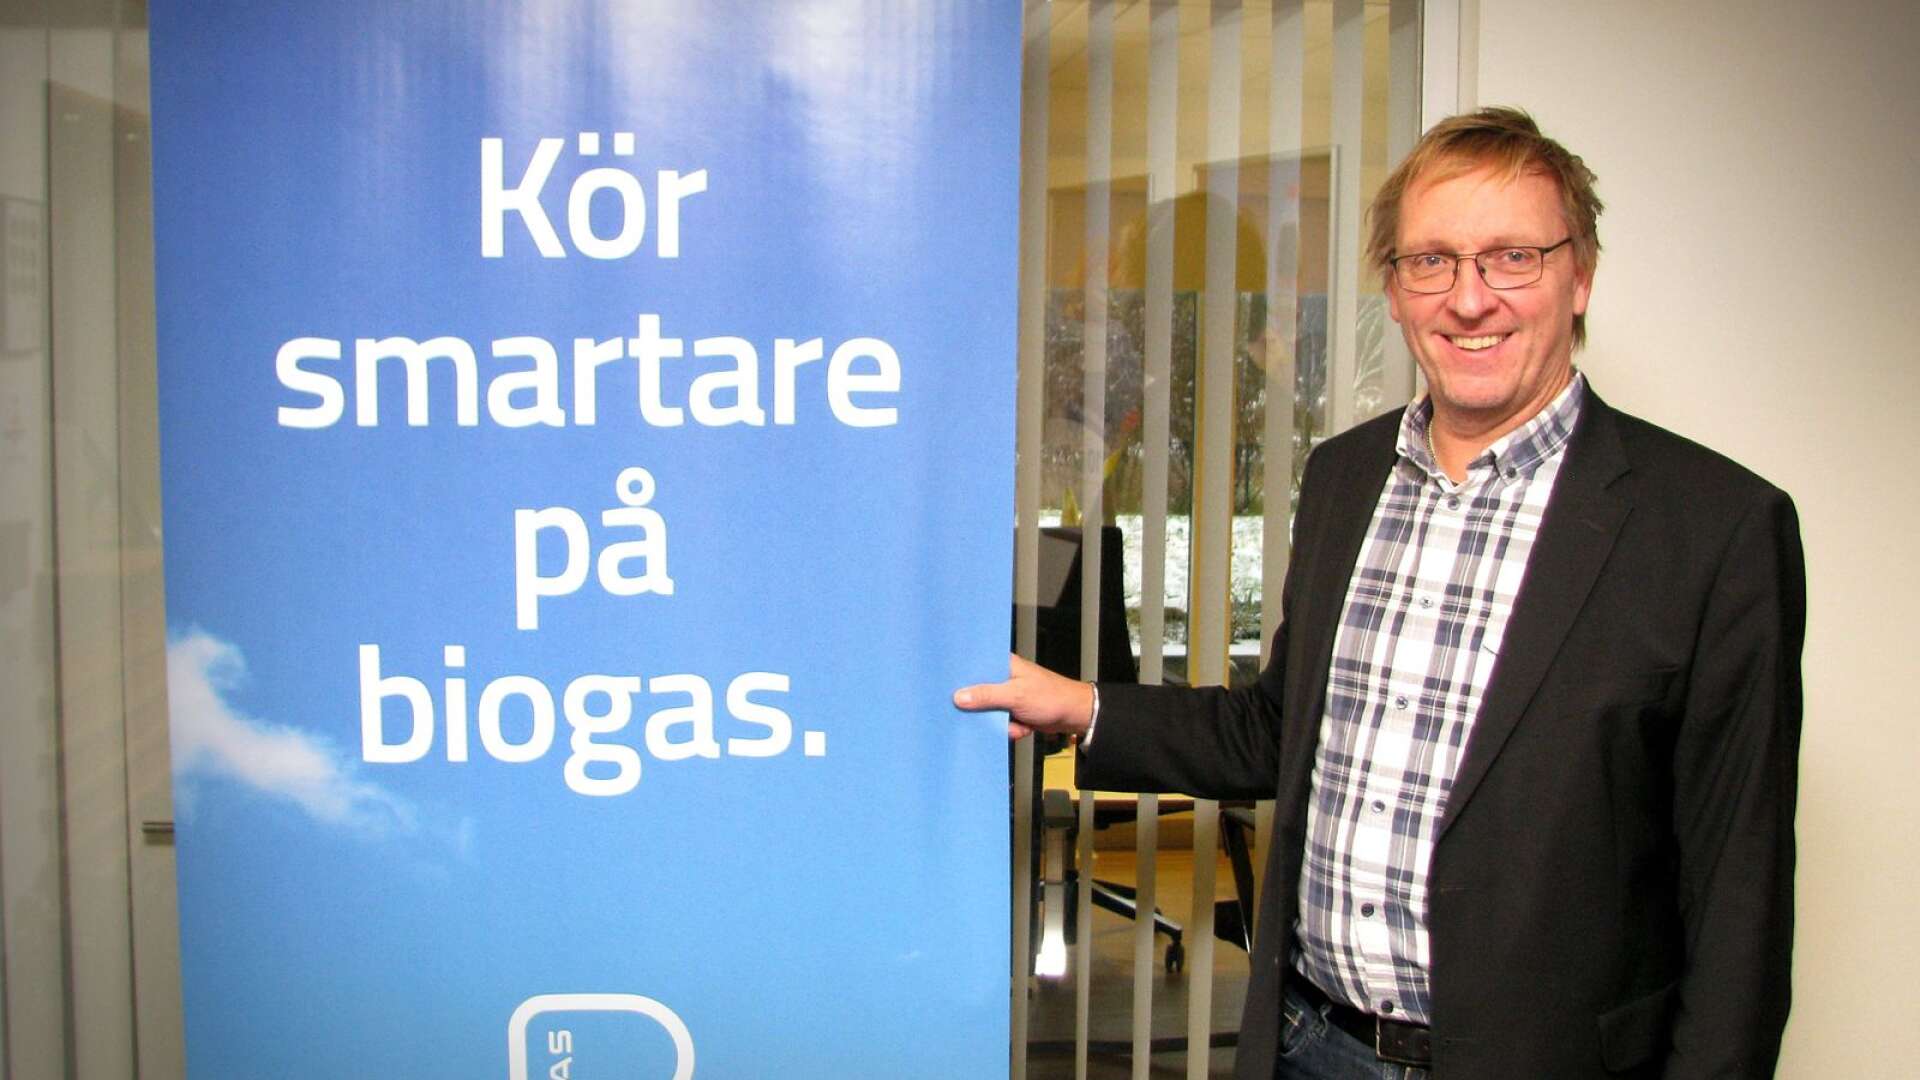 Sin femte station för tankning av biogas vill OK Värmland bygga vid macken på Lorensberg, berättar vd:n Stefan Särnehed.